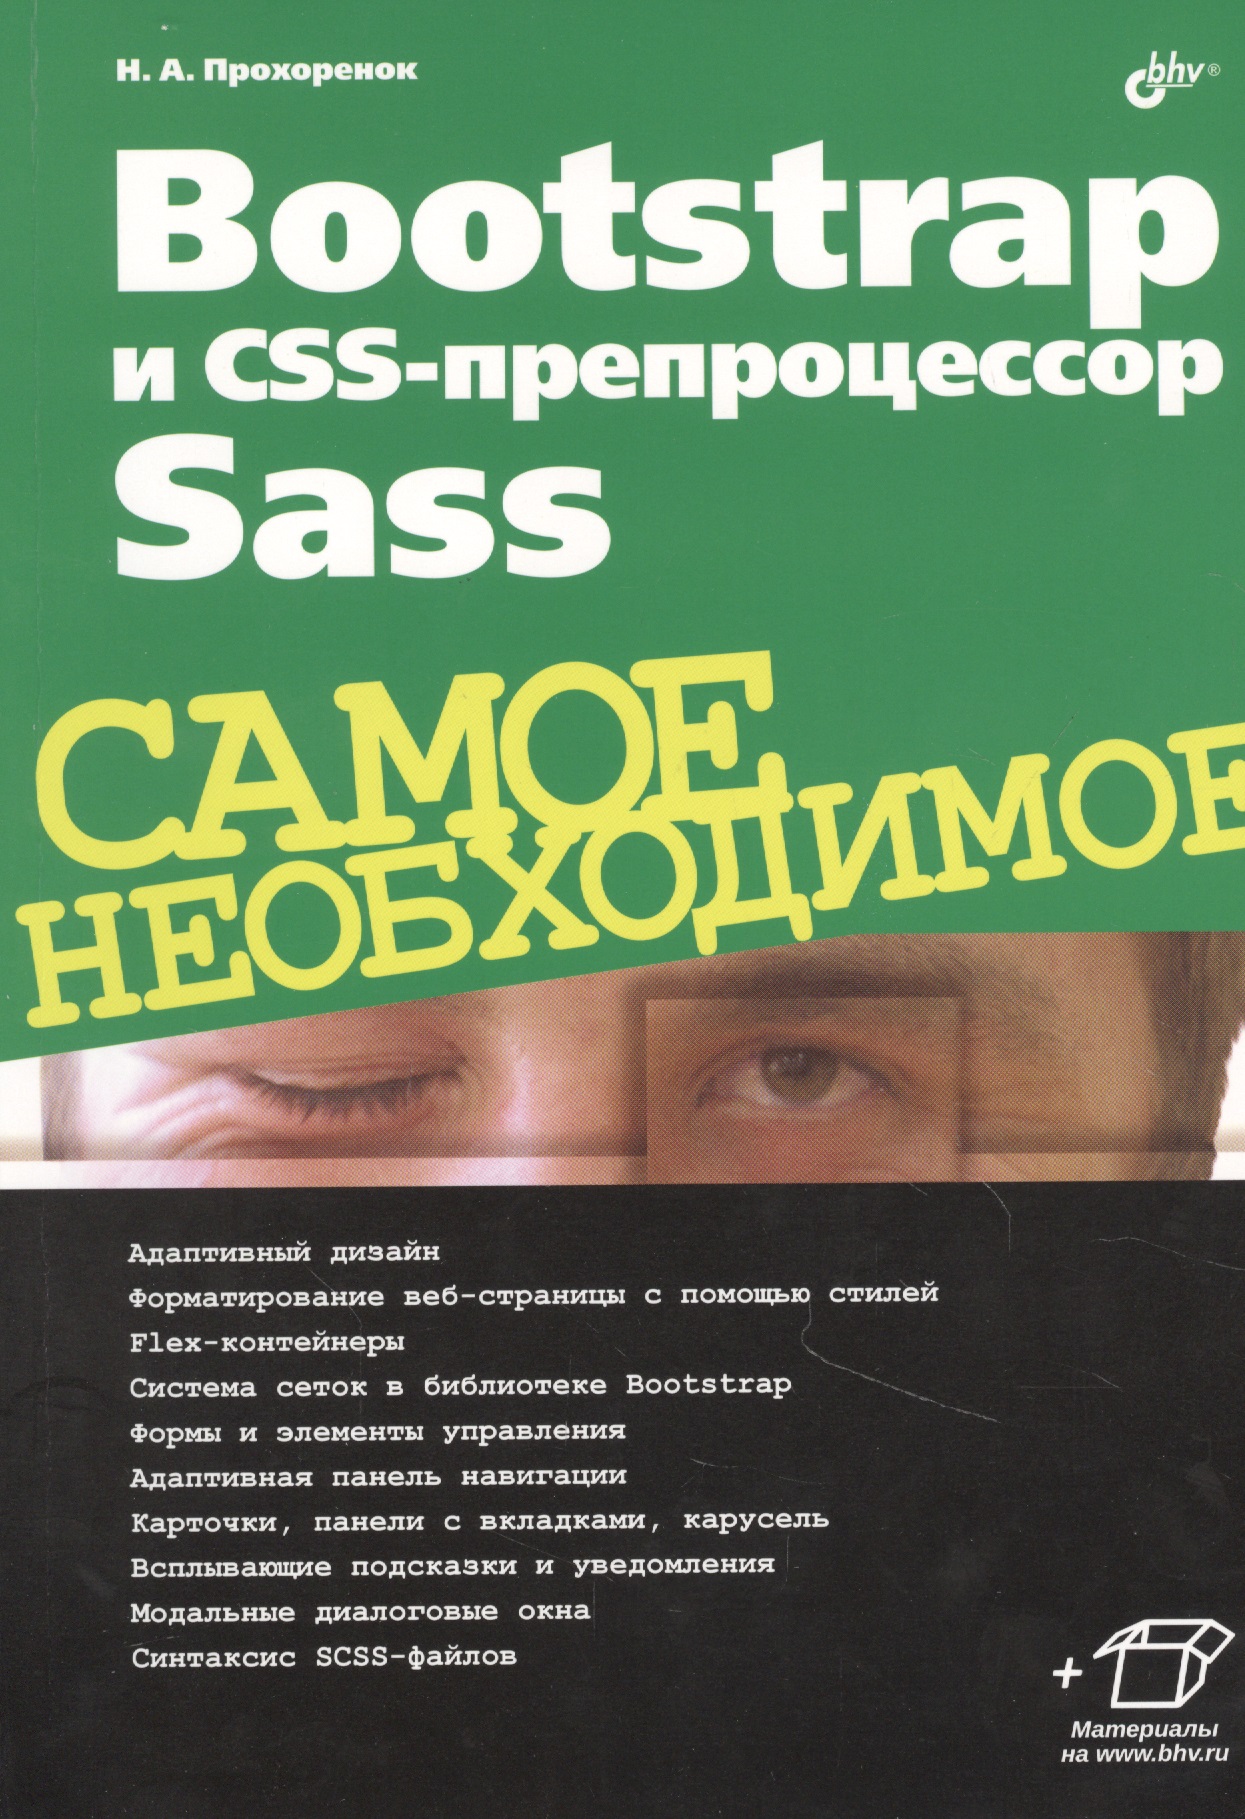 Bootstrap  CSS- Sass.  